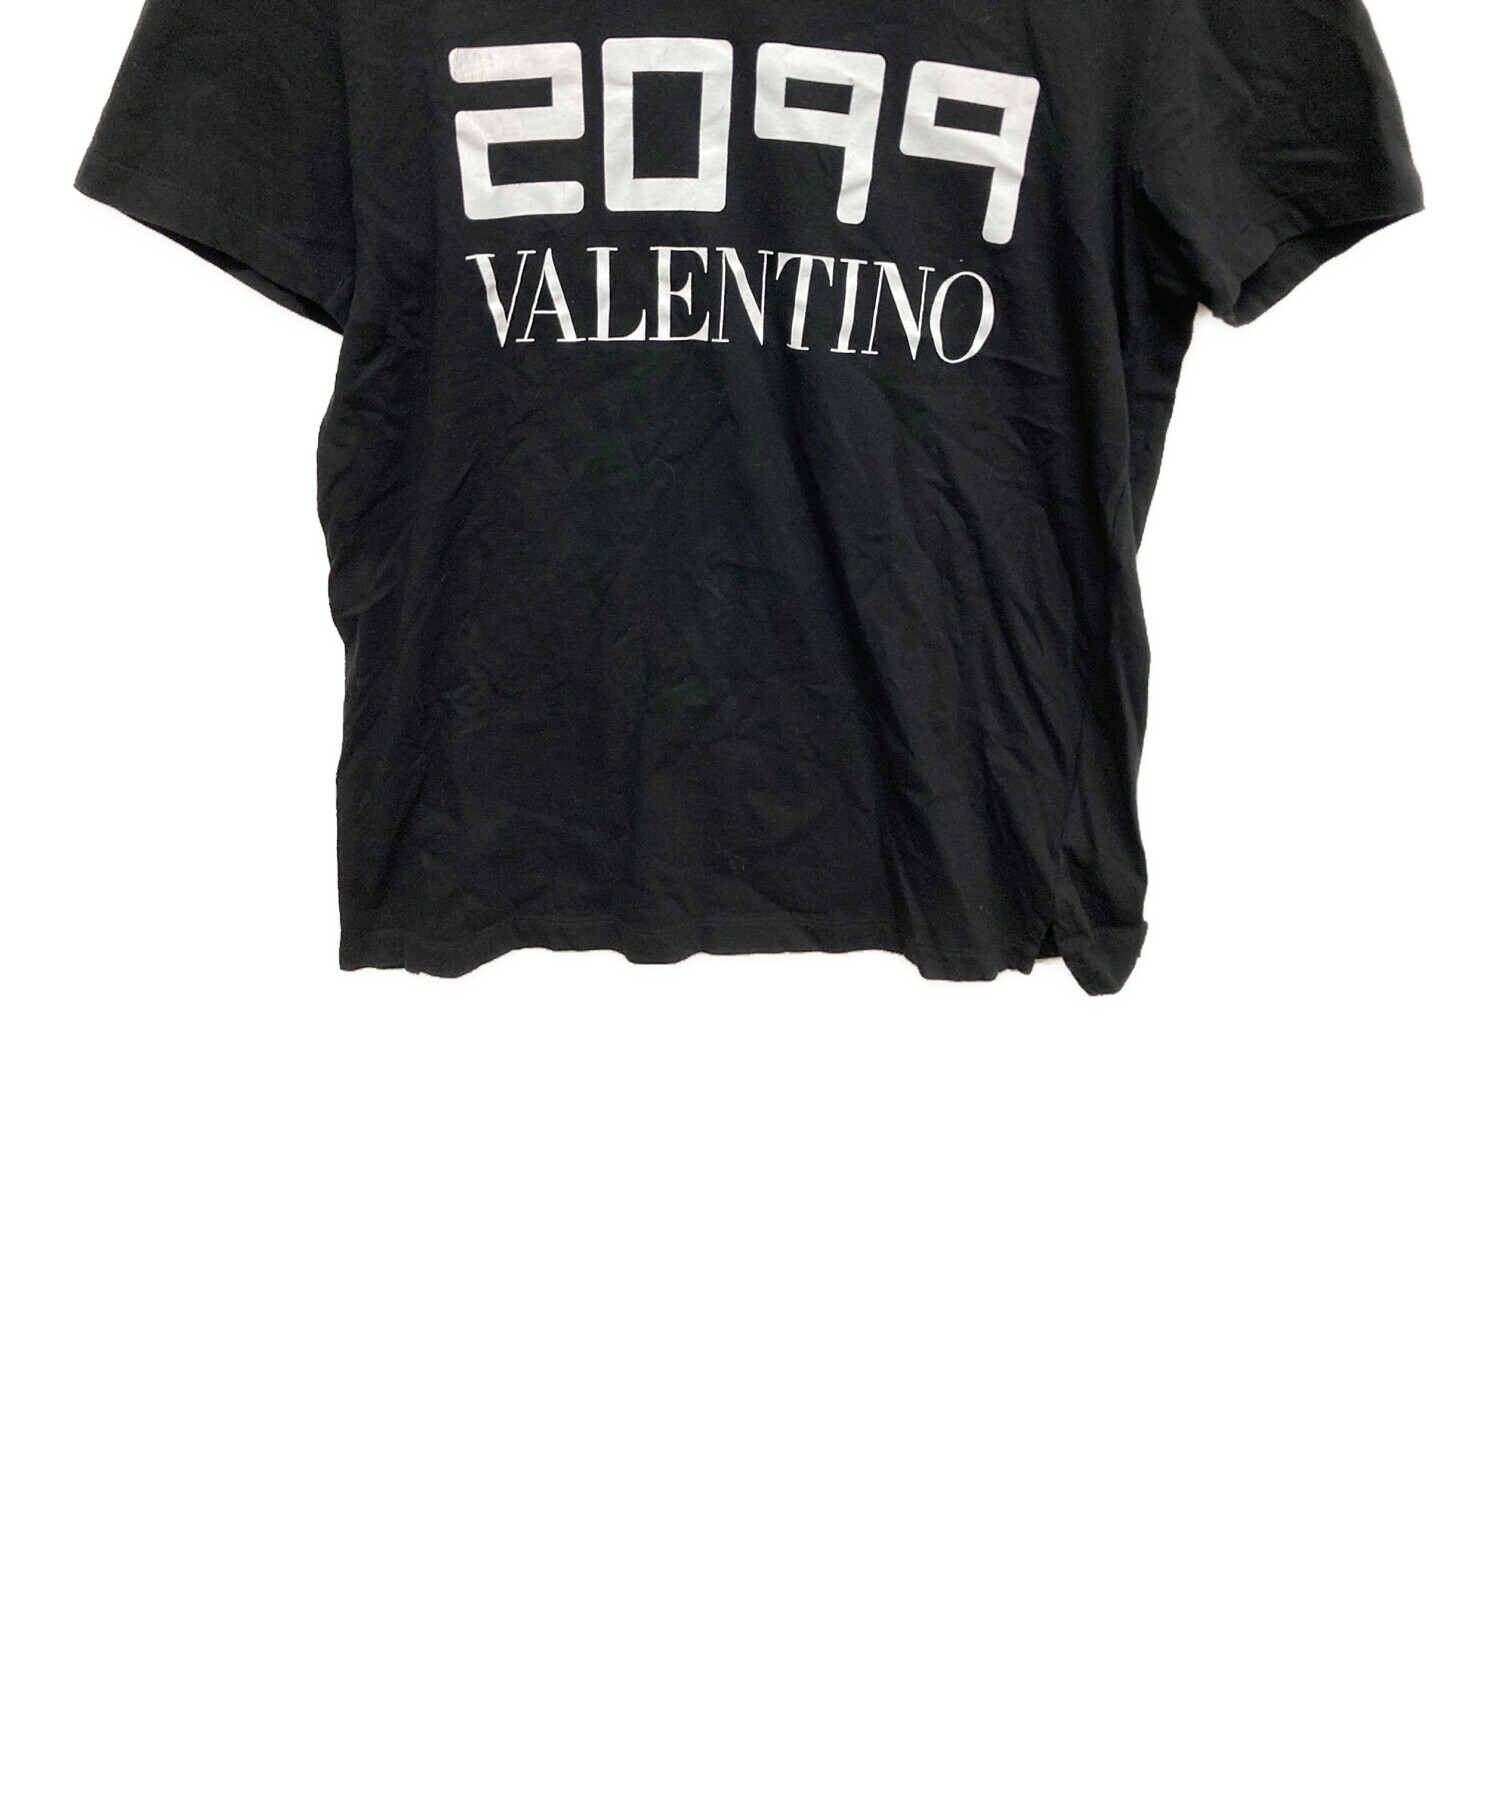 中古・古着通販】VALENTINO (ヴァレンティノ) 2099ロゴTシャツ